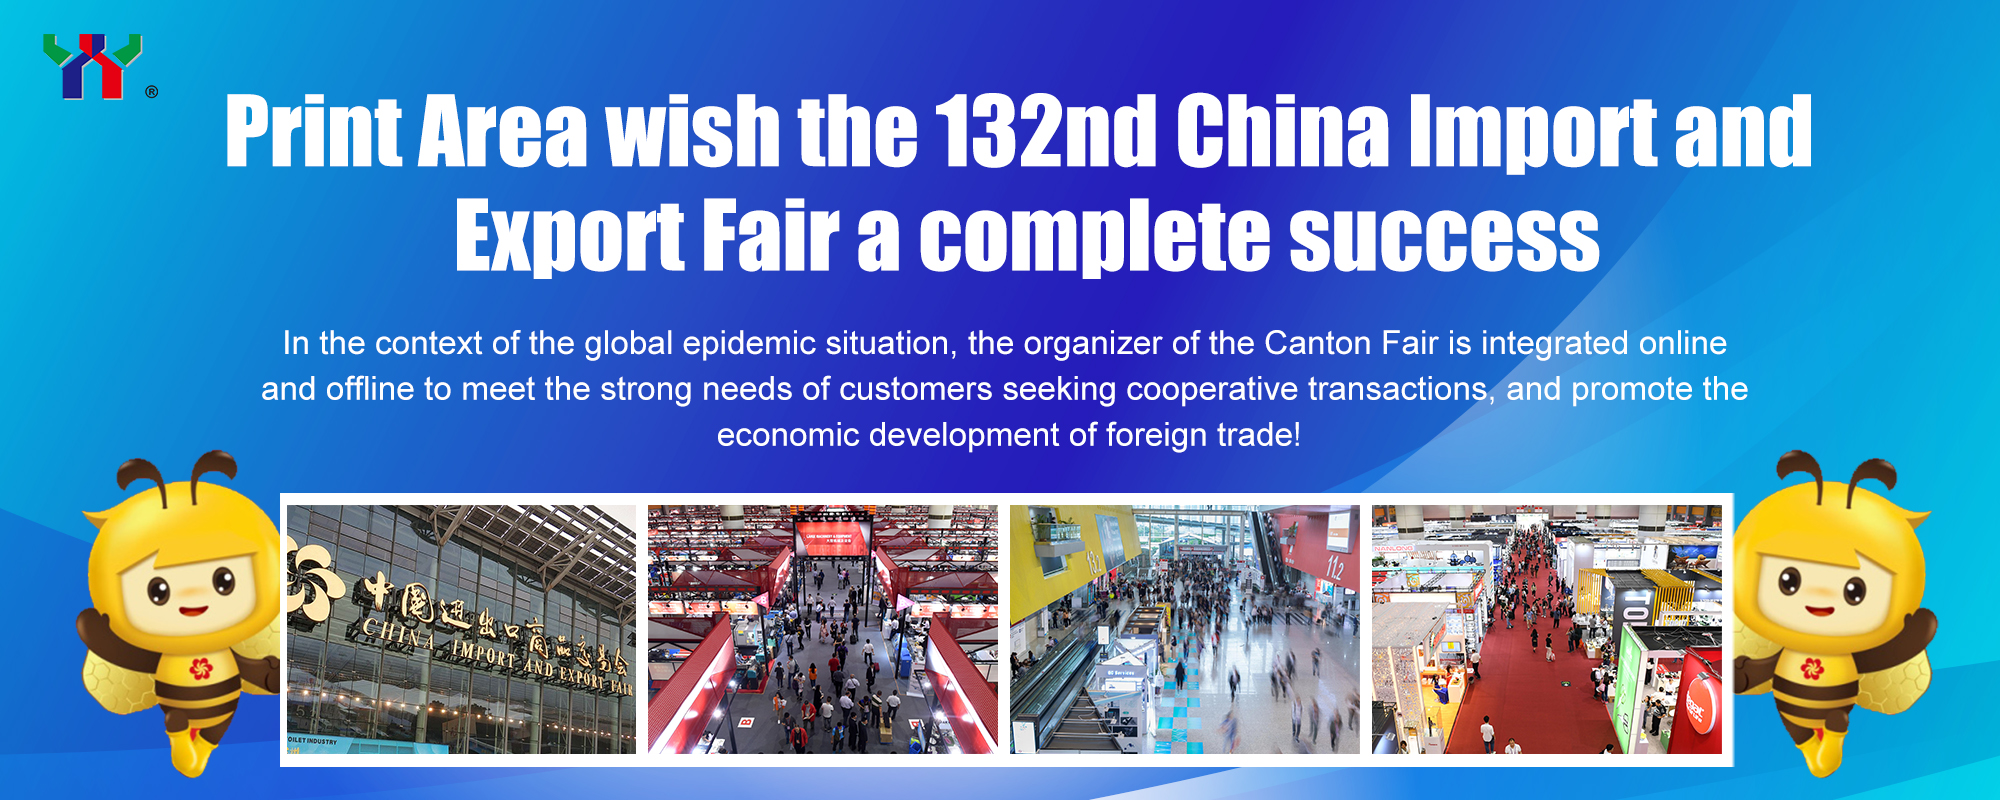 Print Area urează cel de-al 132-lea târg de import și export din China un succes complet